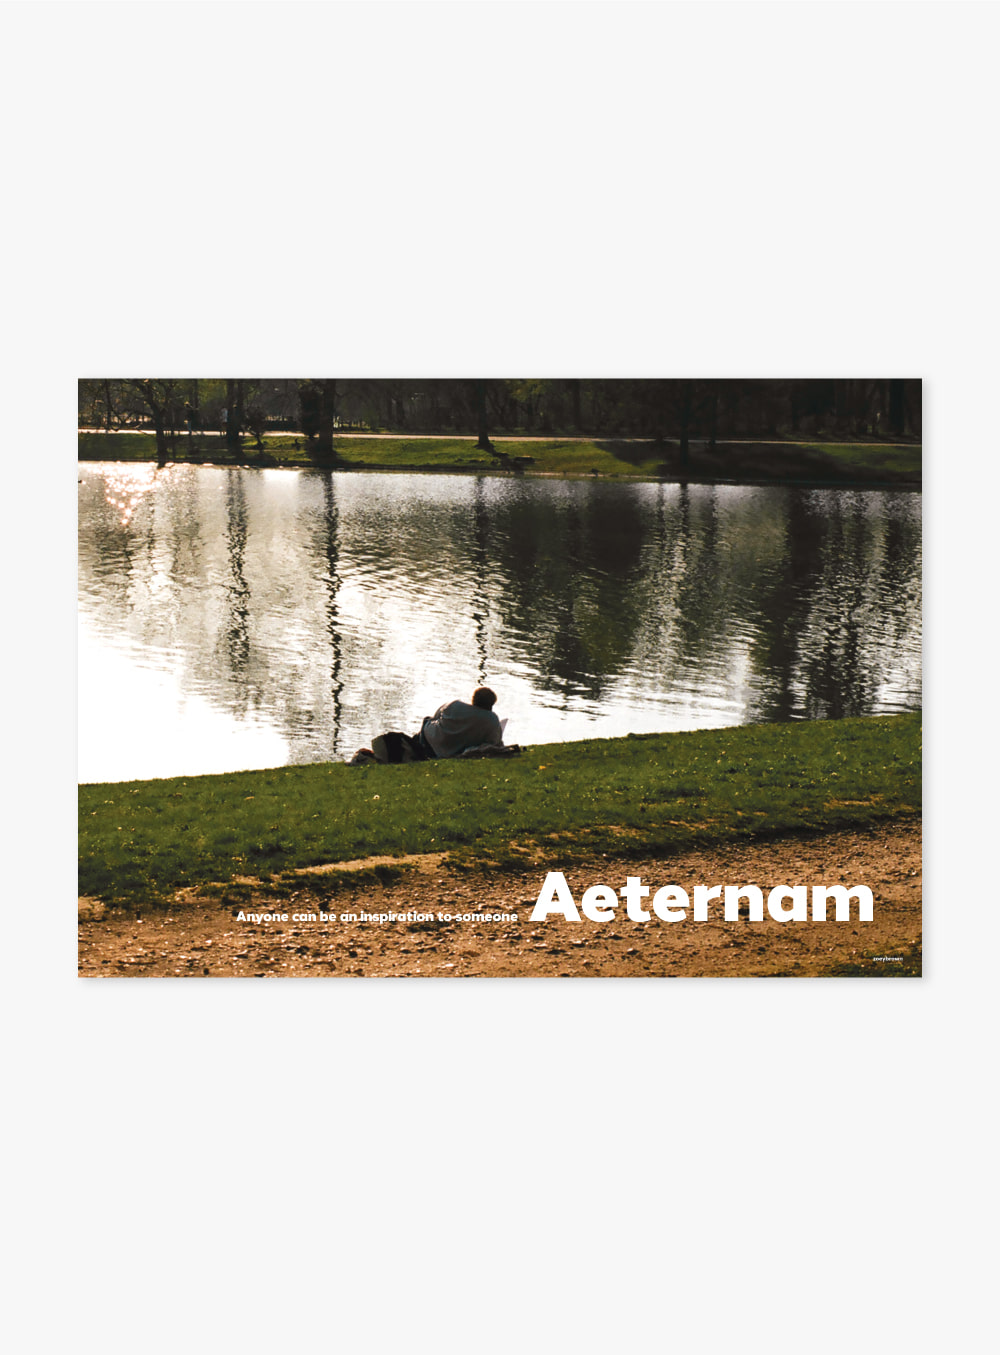 조이브라운 - Aeternam Poster(A3)